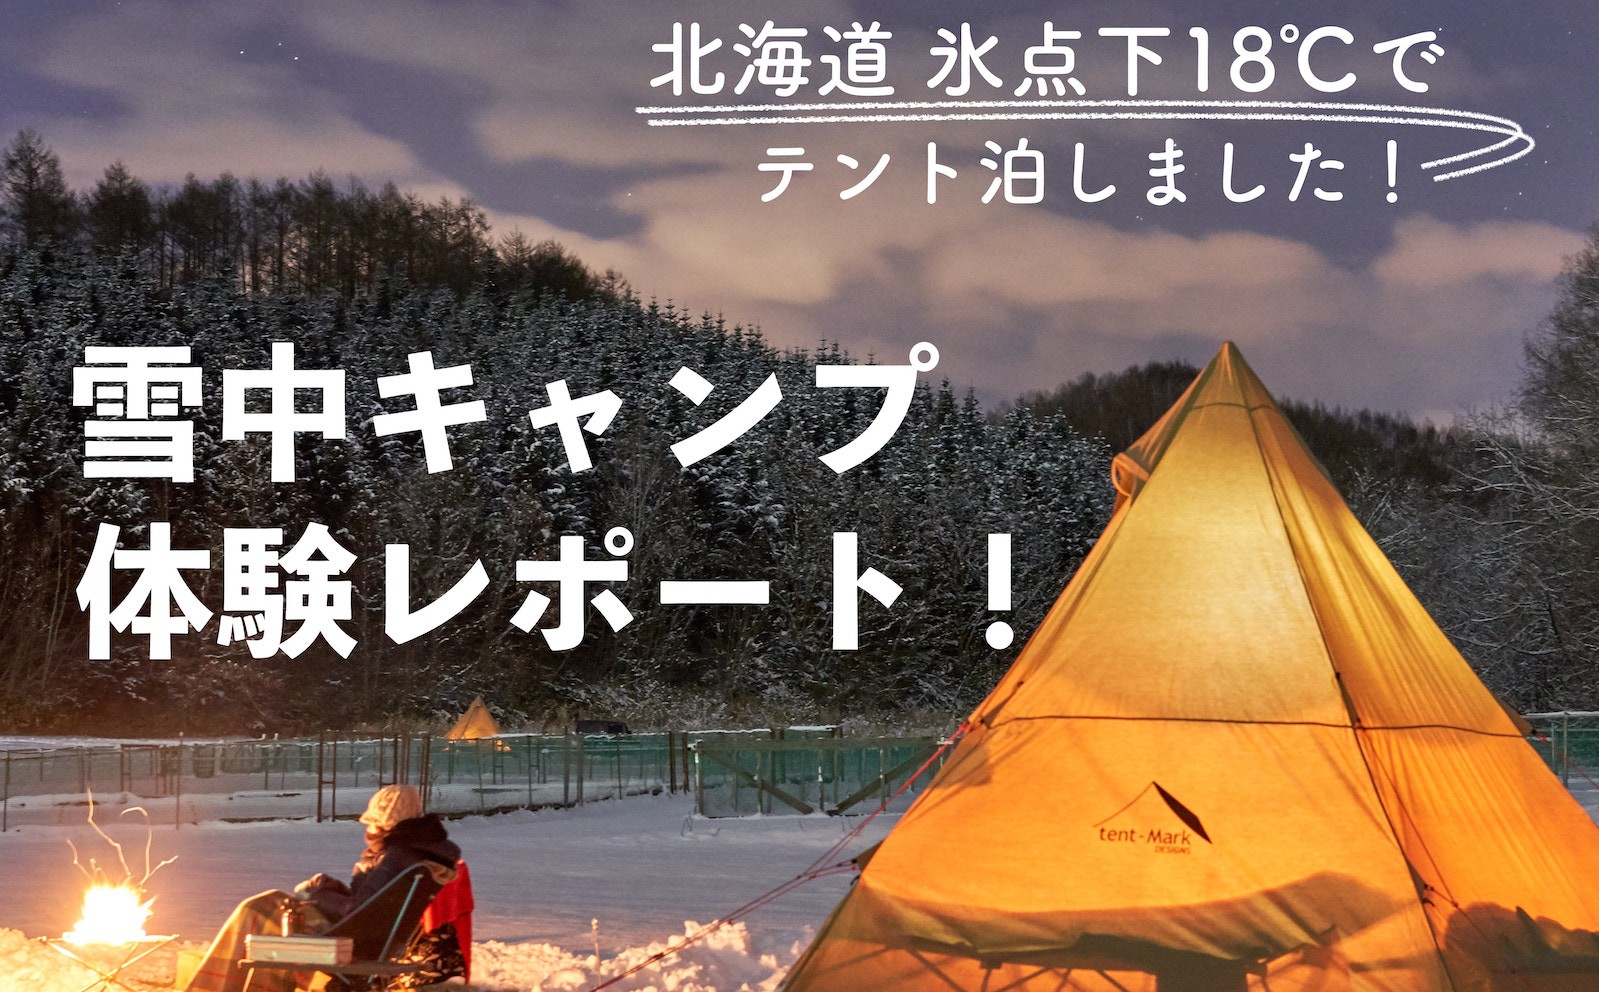 北海道の冬キャンプ 18 でテント泊は本当に楽しい にお答えします Possibility Laboポジラボ 北海道キャンプ場ブログ